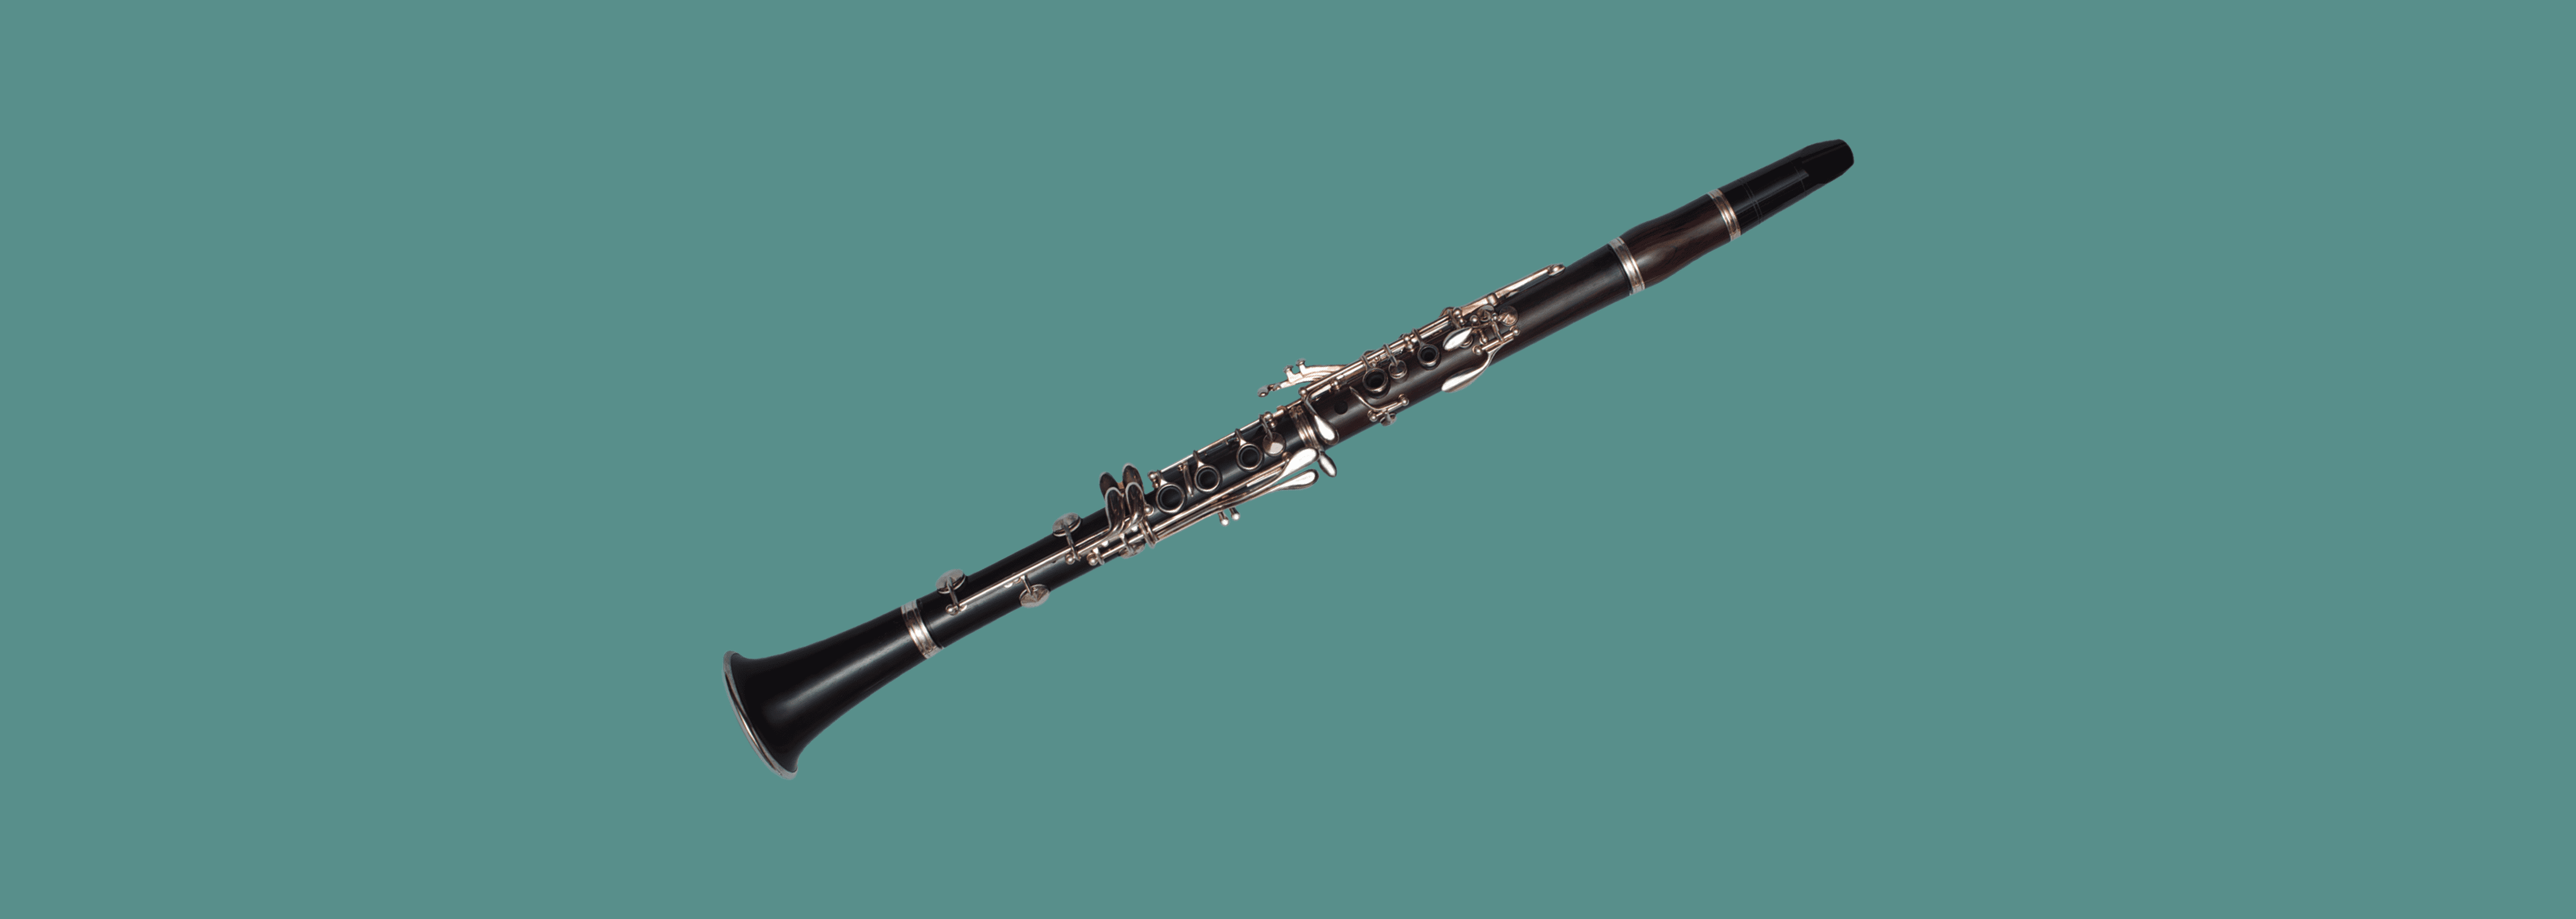 1967 Clarinet Paris